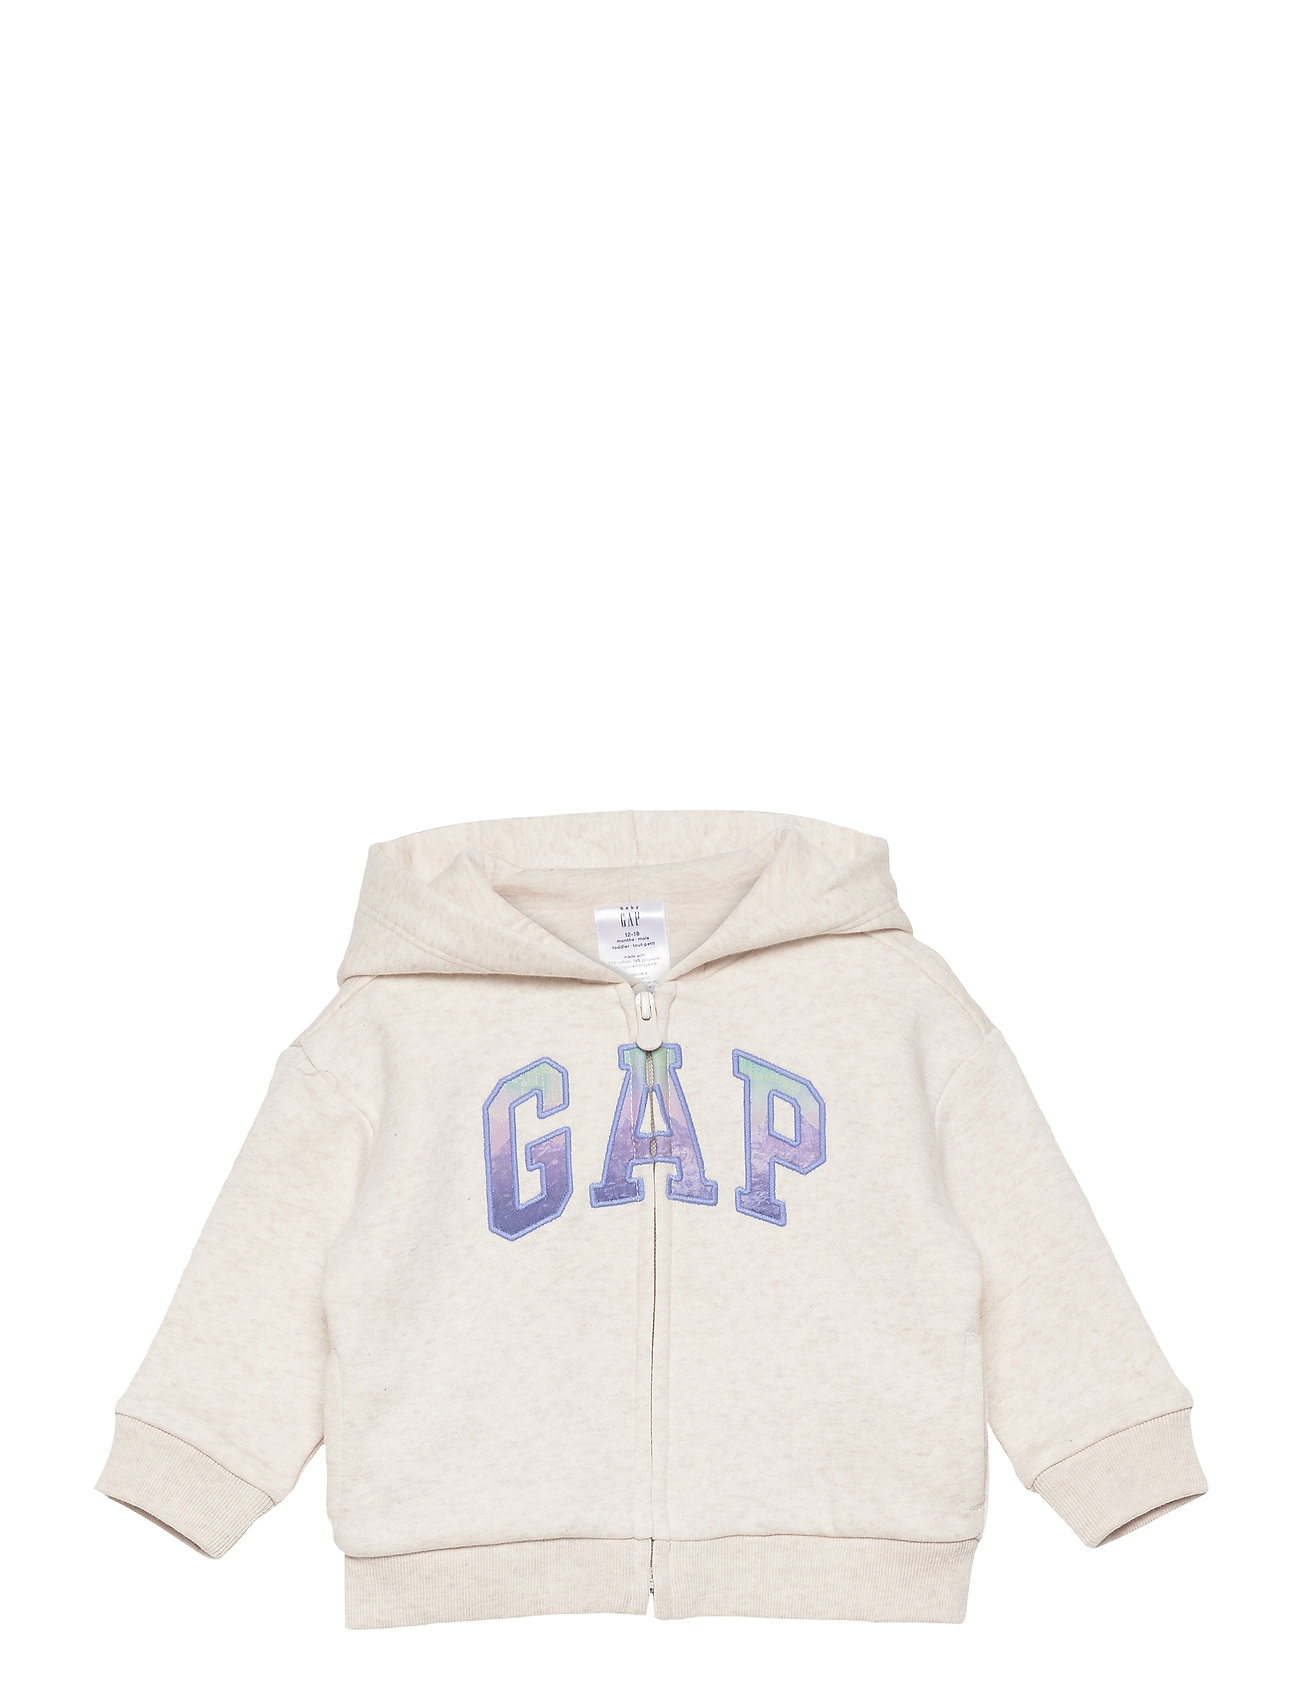 fungere Velsigne Tilsyneladende GAP hoodies – Intl Fash Logo Fz Hoodie Trøje Grå GAP til børn i Grå -  Pashion.dk